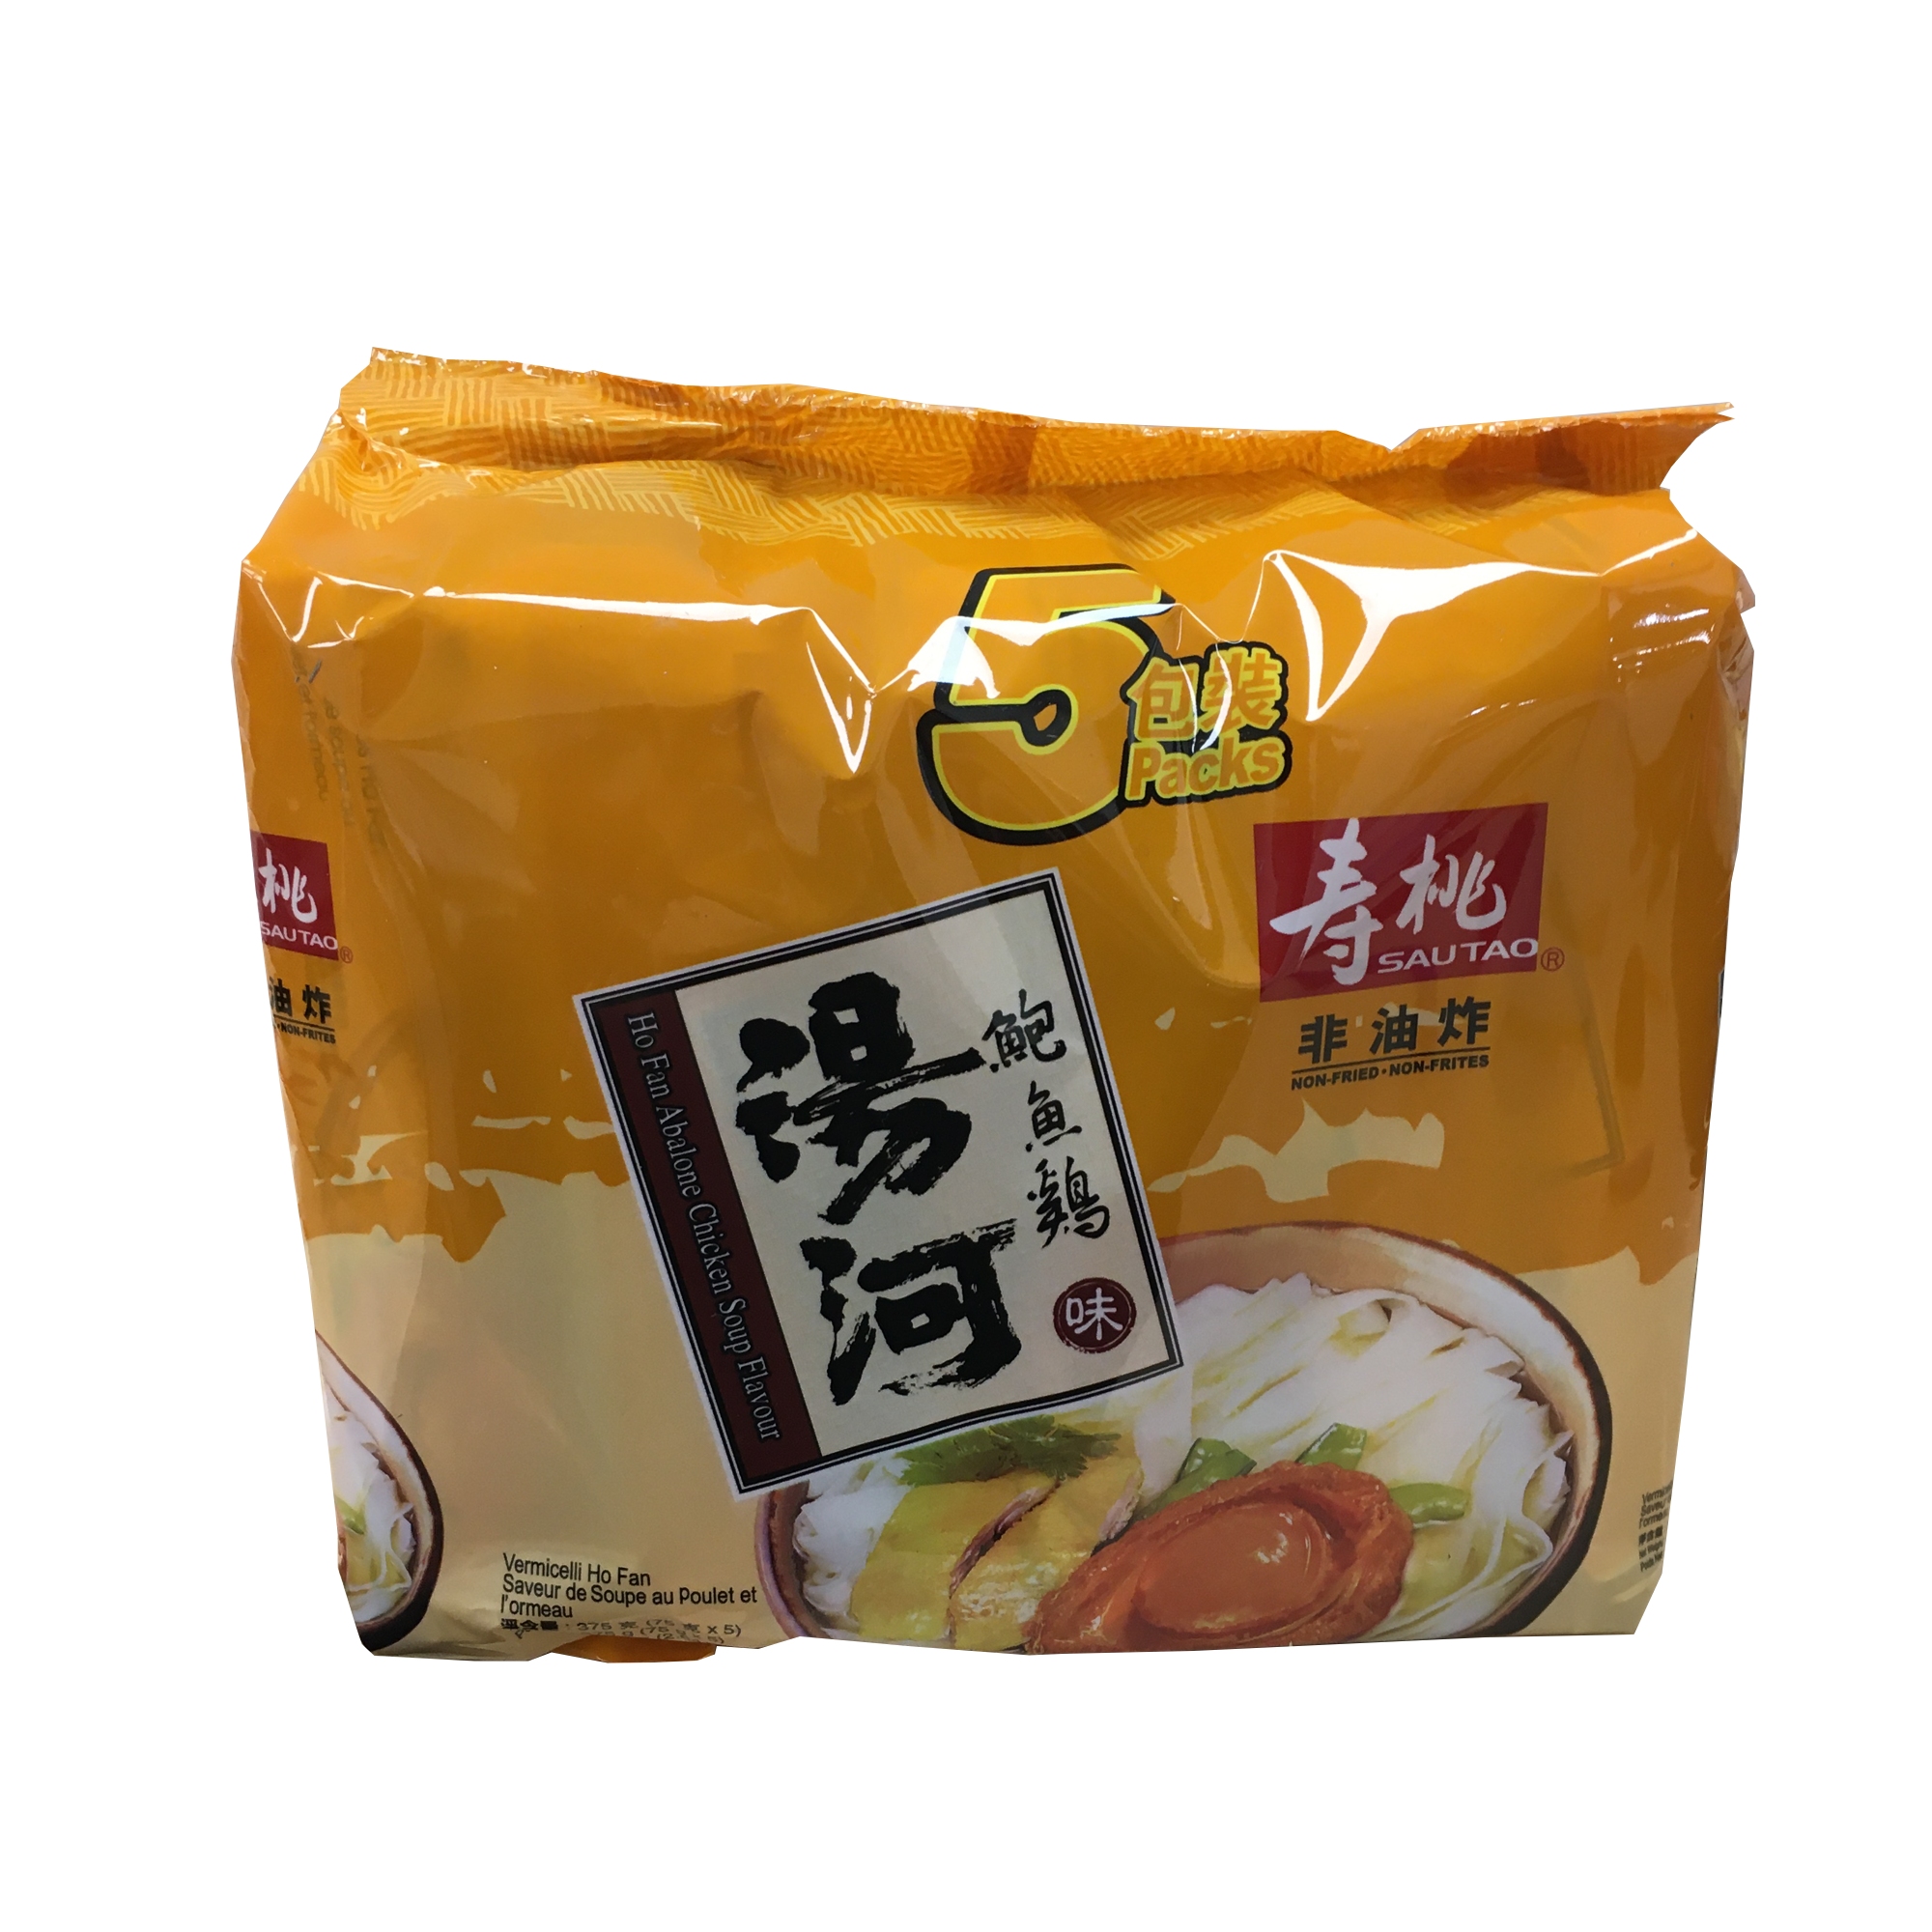 寿桃汤河鲍鱼鸡味5包装 ND137011